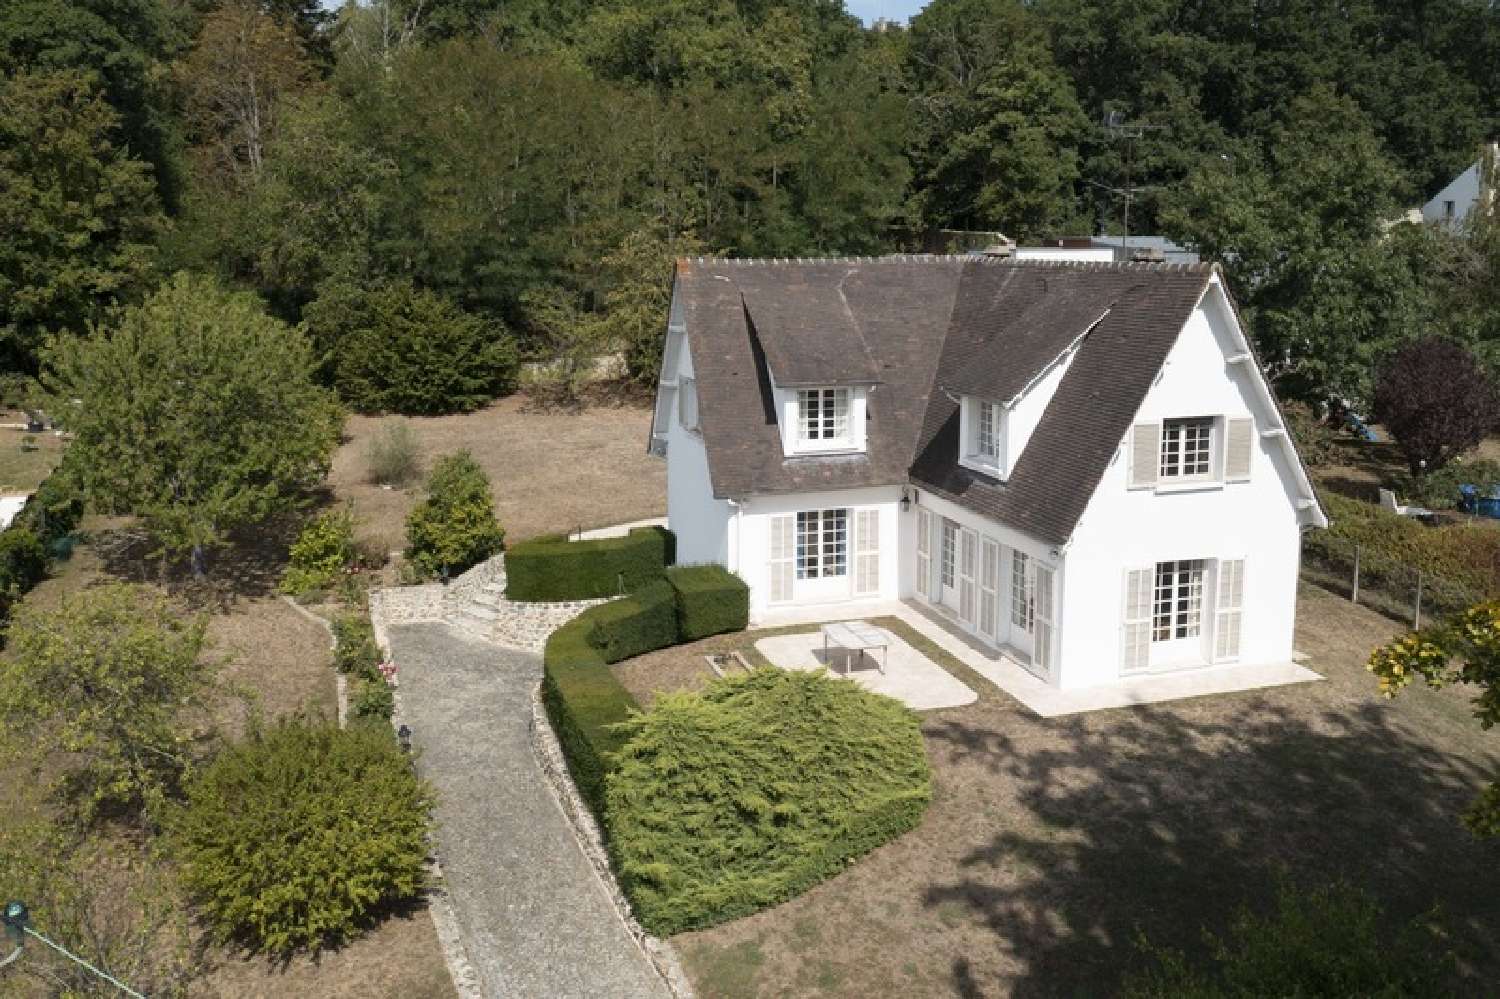  à vendre maison bourgeoise Neauphle-le-Château Yvelines 6